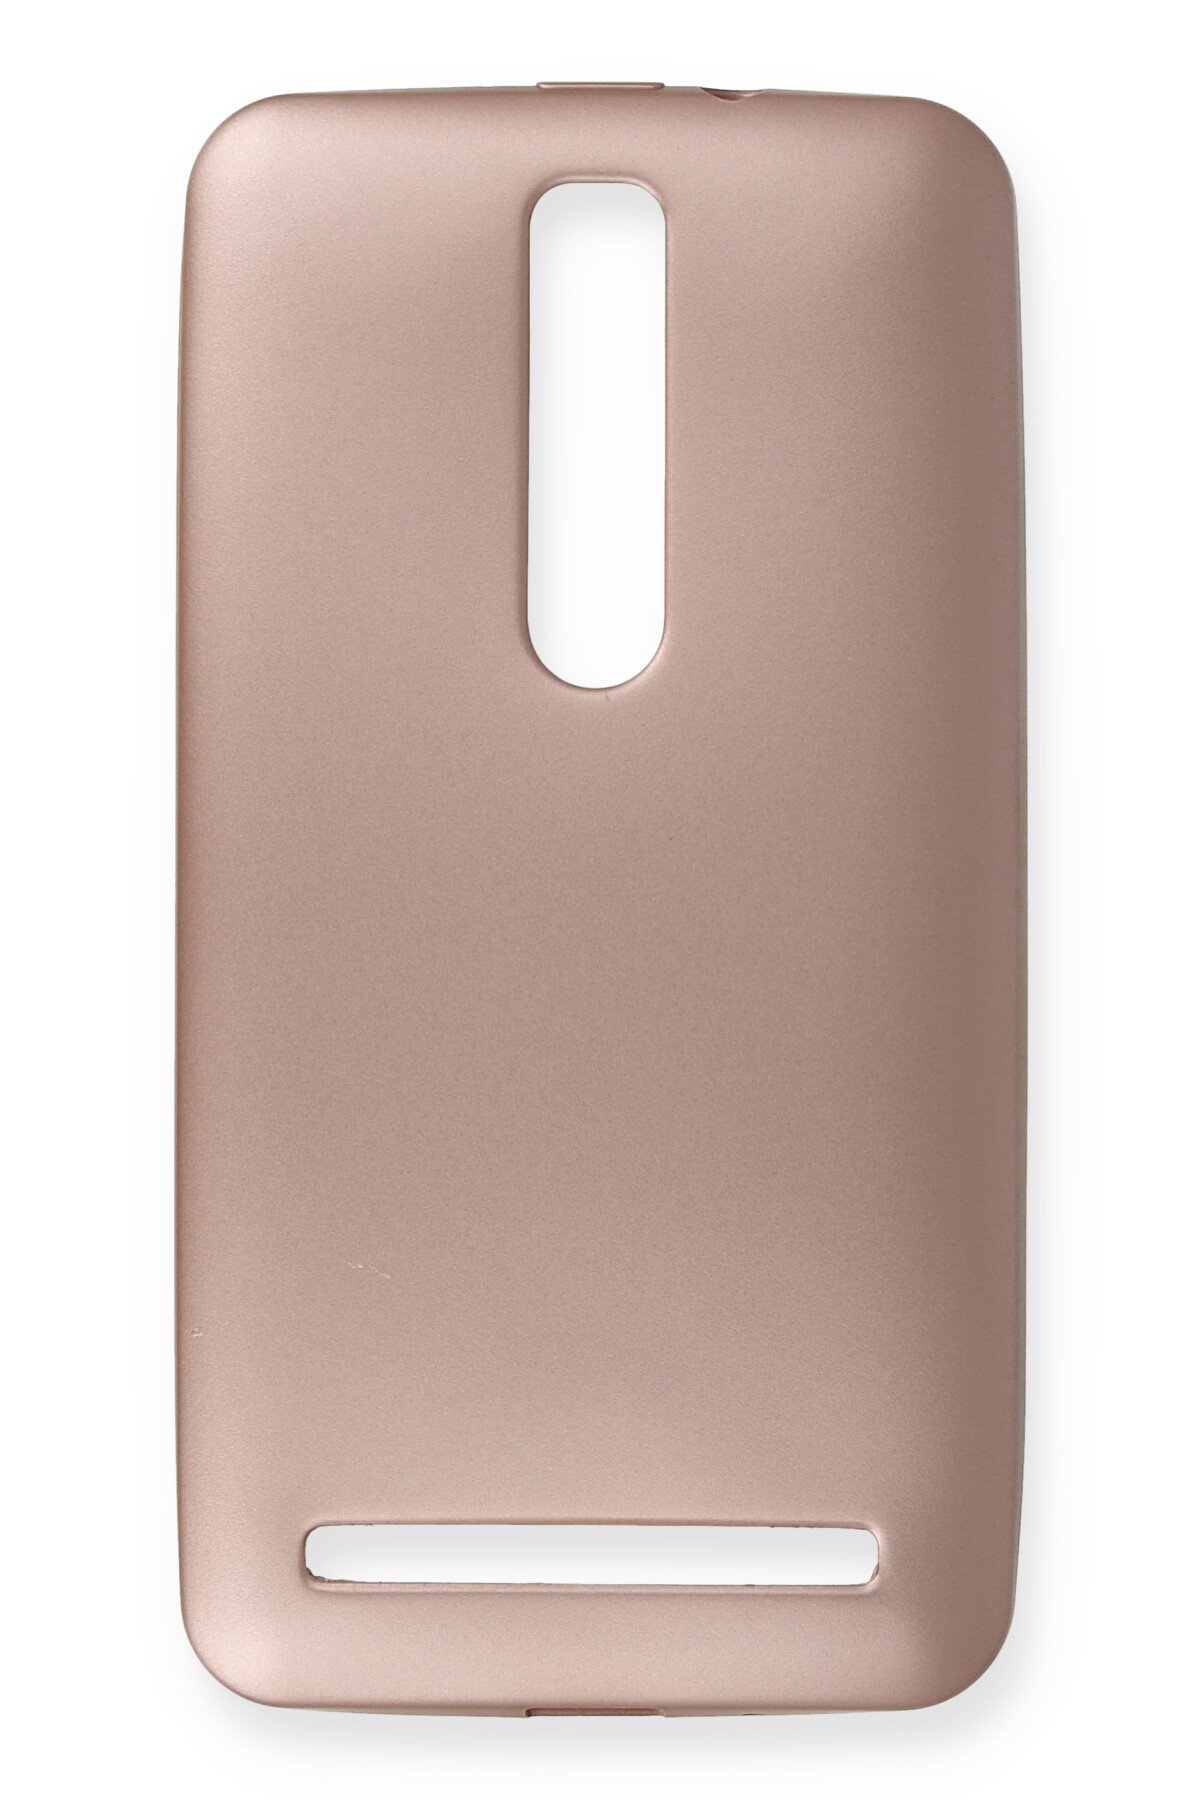 Newface Asus Zenfone 2 (ze551ml) Kılıf First Silikon - Rose Gold